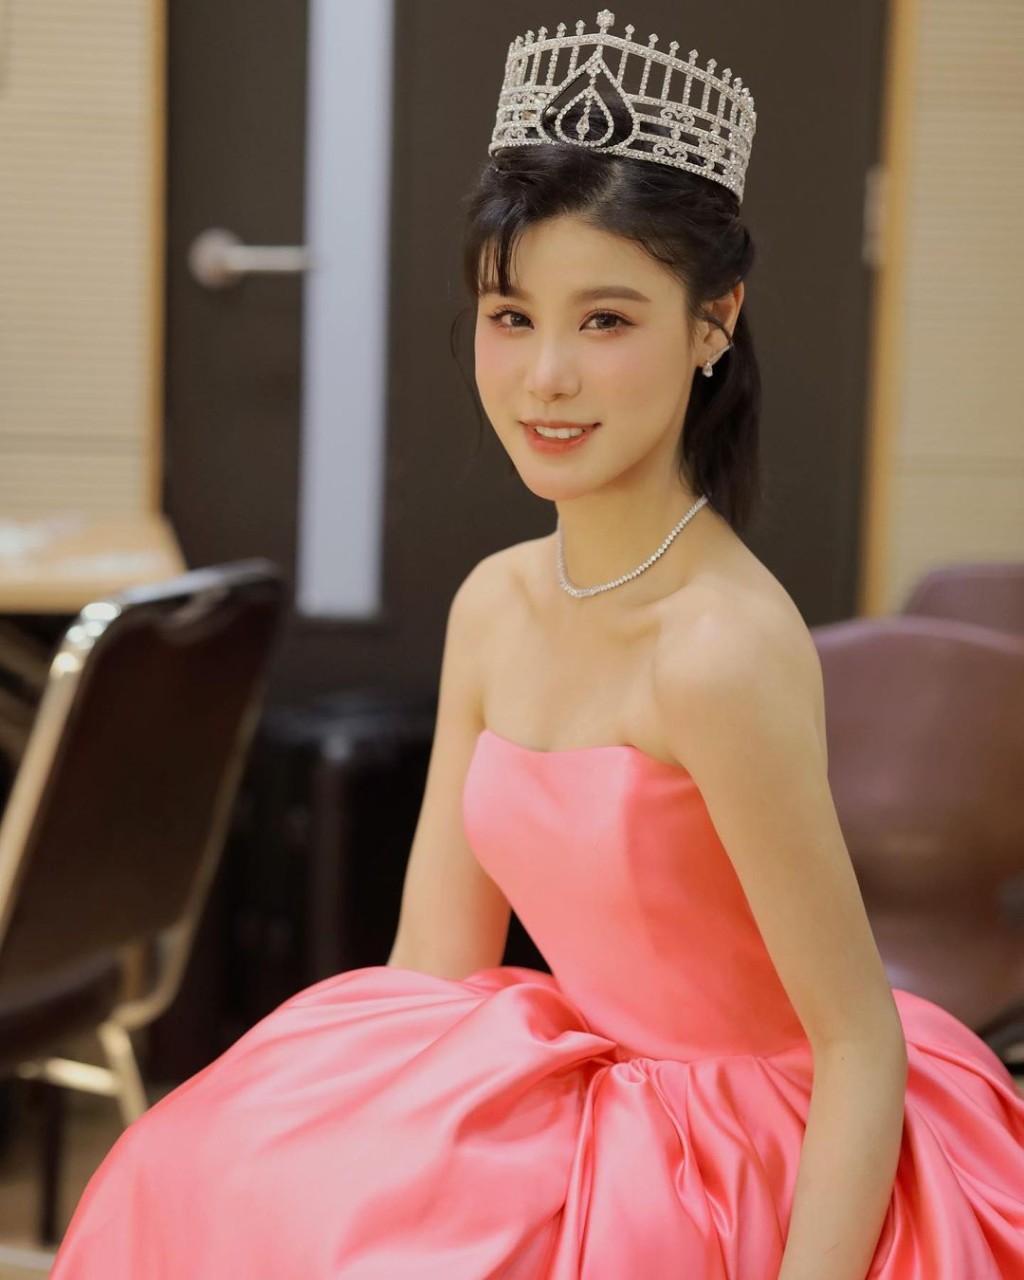 古佩玲是《2019年度香港小姐竞选》季军。